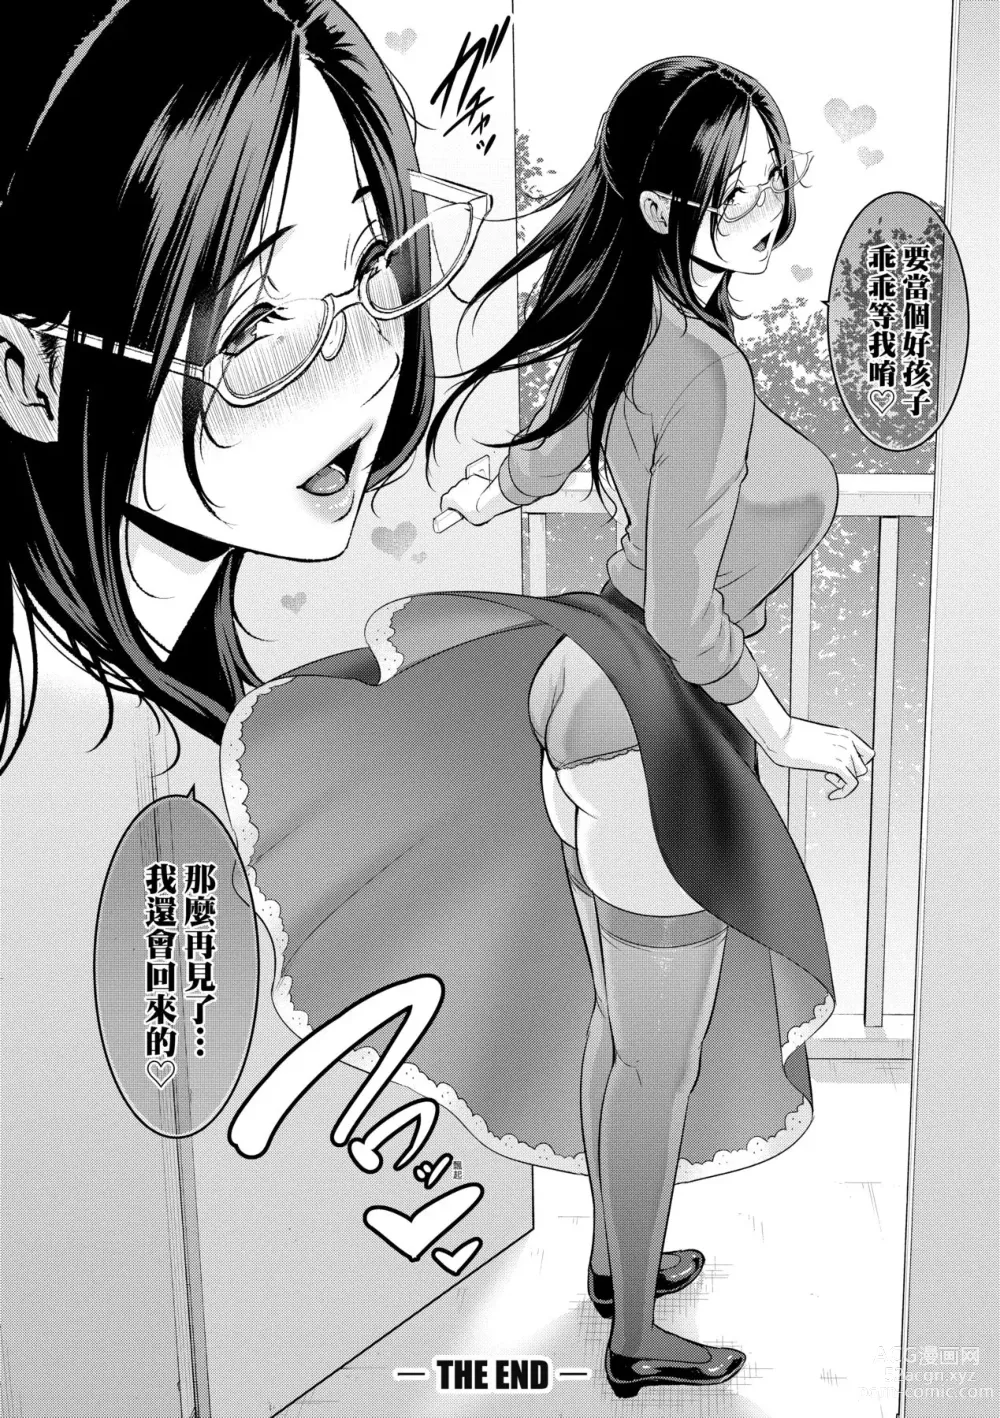 Page 201 of manga 朋友的馬麻 (decensored)